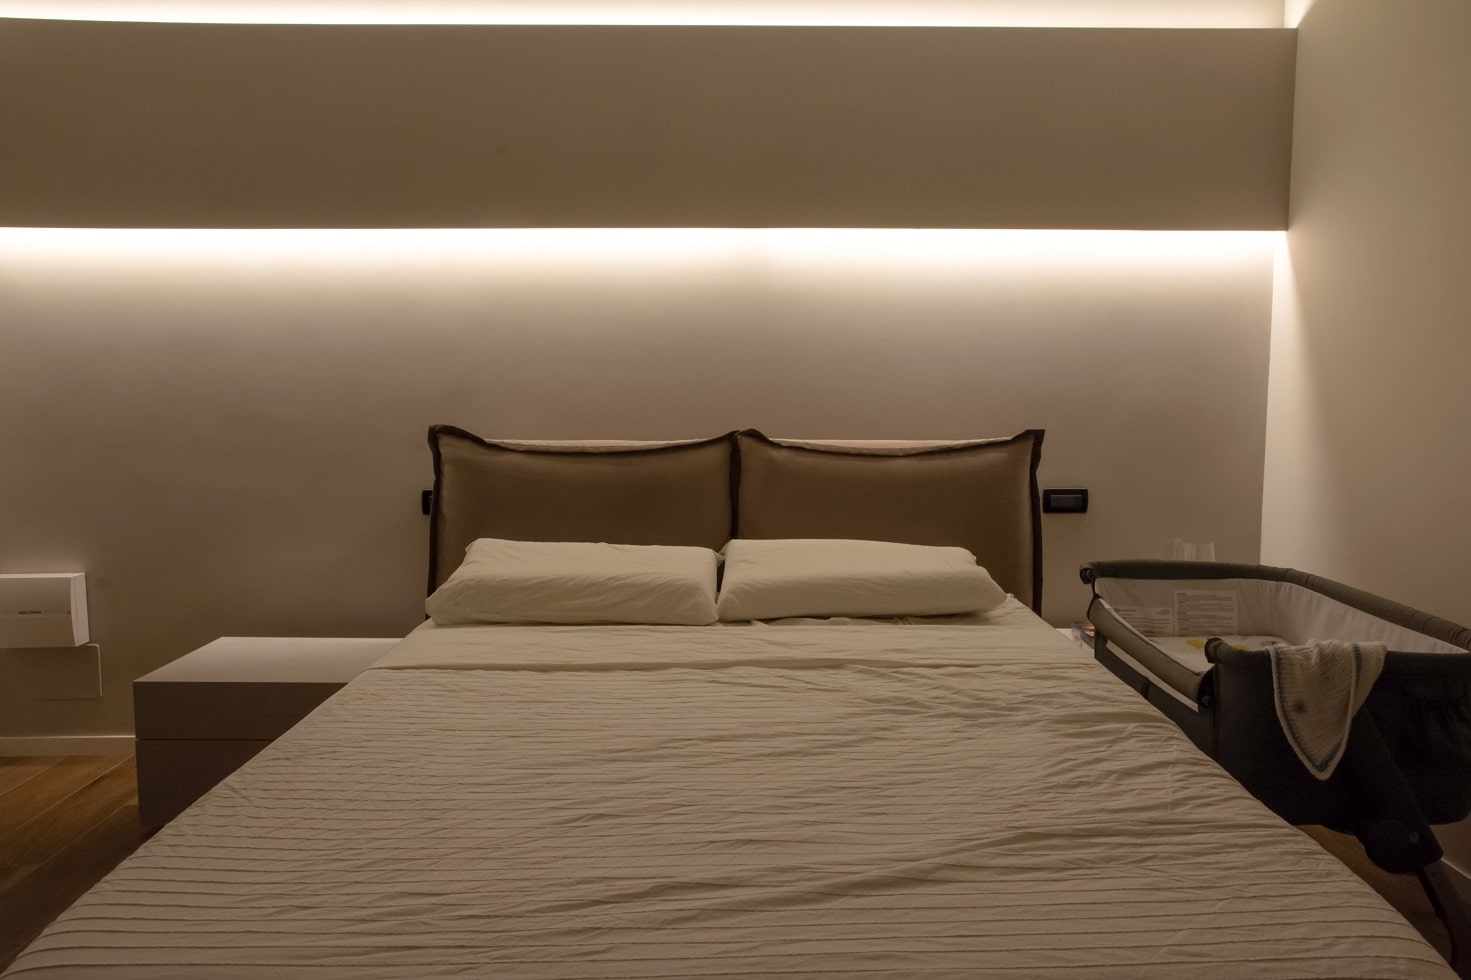 Camera da letto e barre a LED